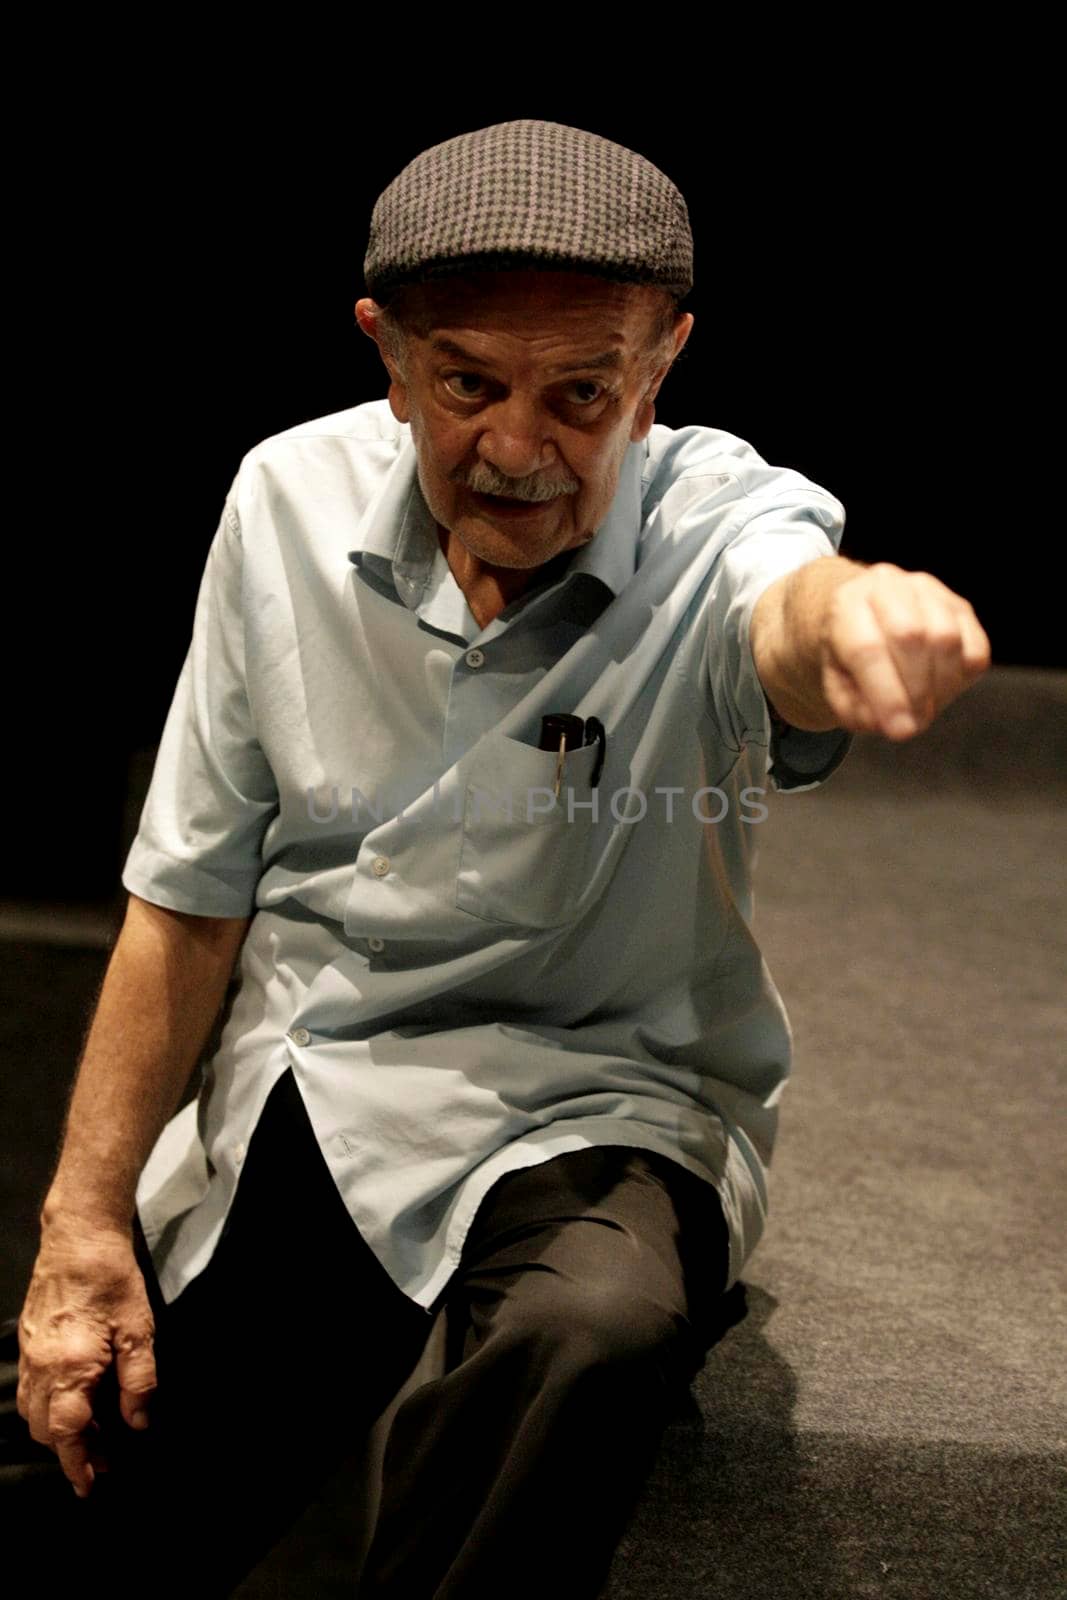 salvador, bahia / brazil - june 8, 2016: Harildo Deda, actor of theater director is seen in the city of Salvador.